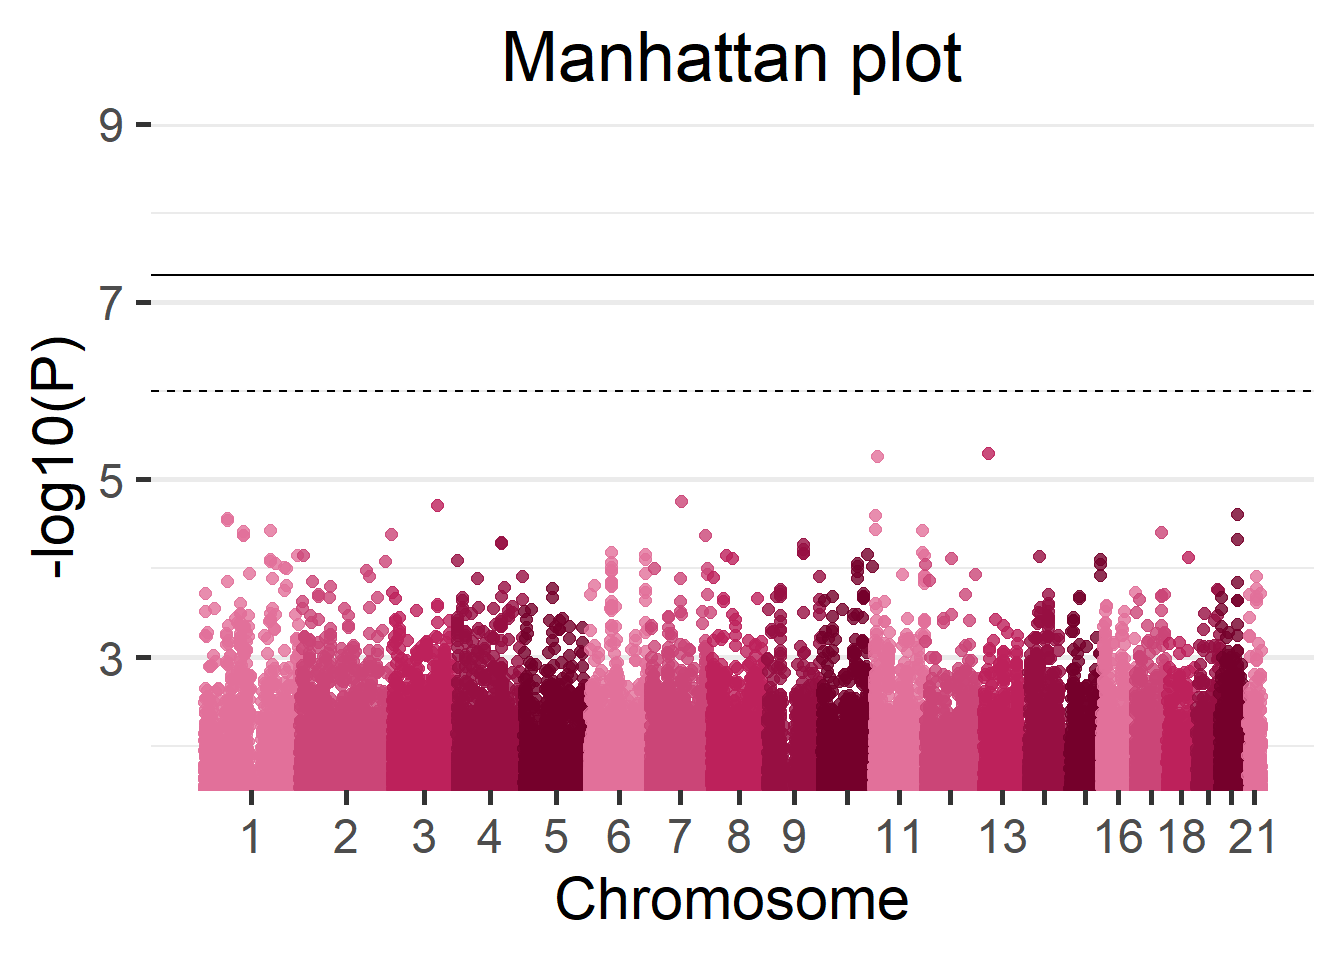 Manhattan plot of the Cohort 1.